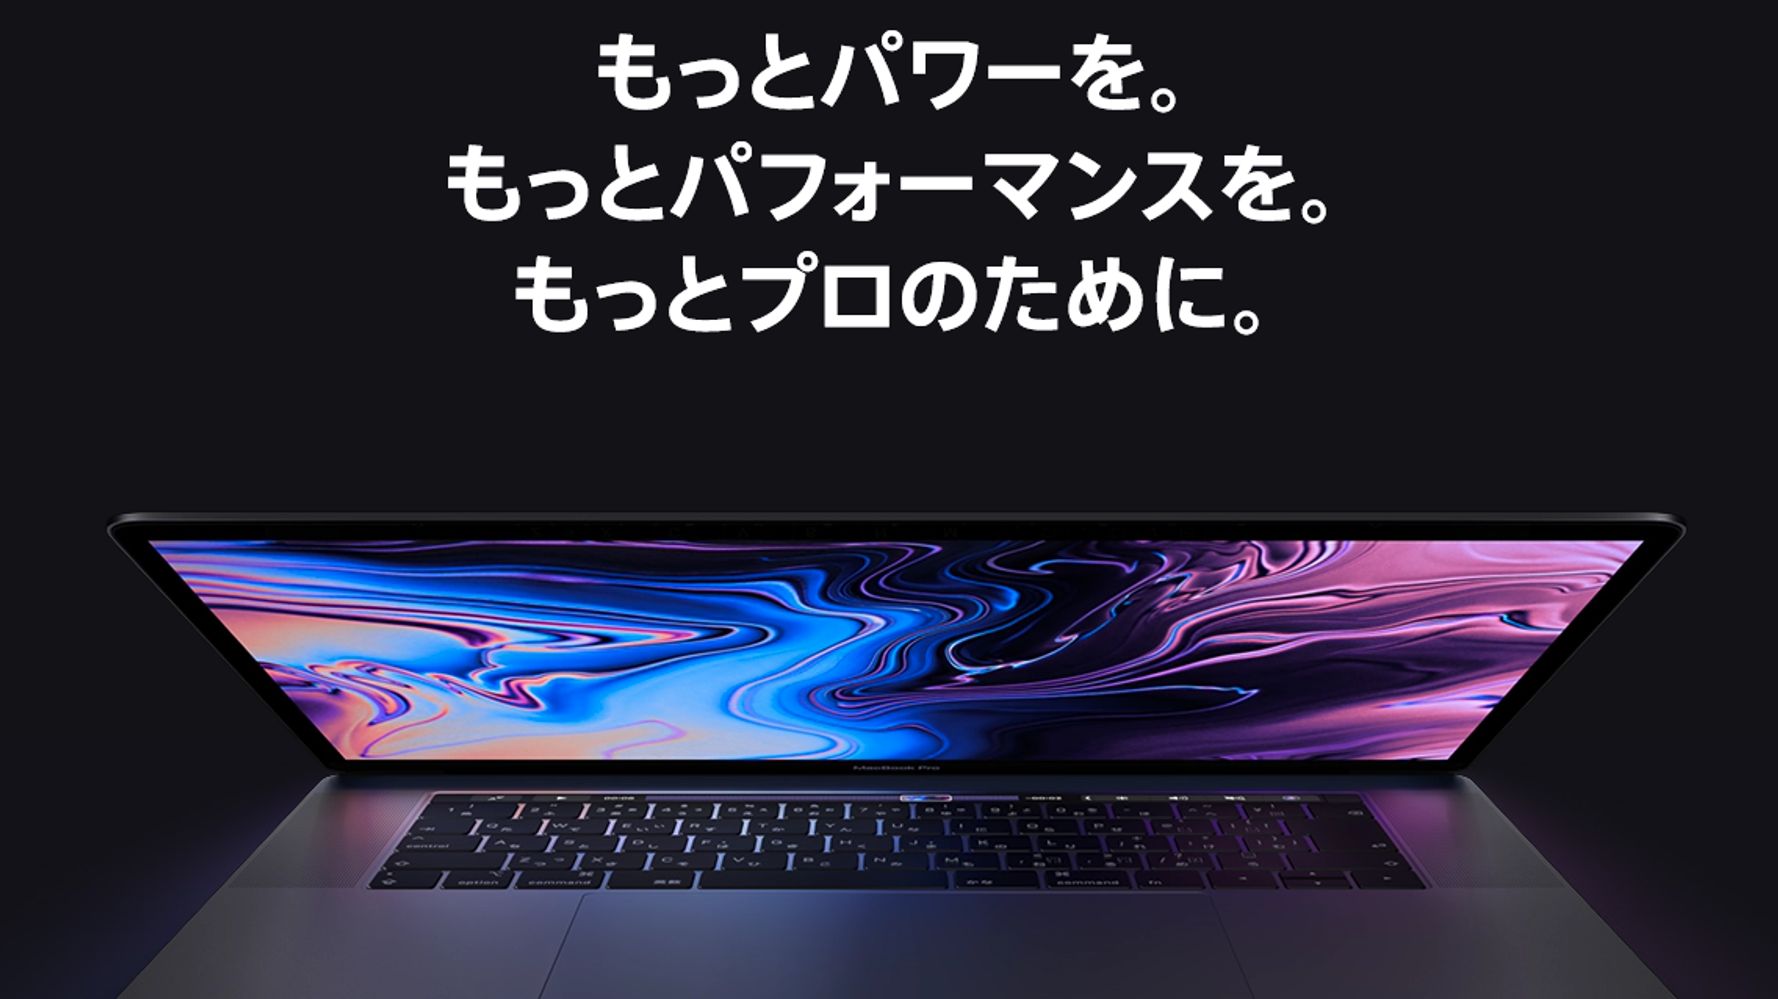 MacBook Pro新モデル発表。8コア Core i9初採用の歴代最速モデル